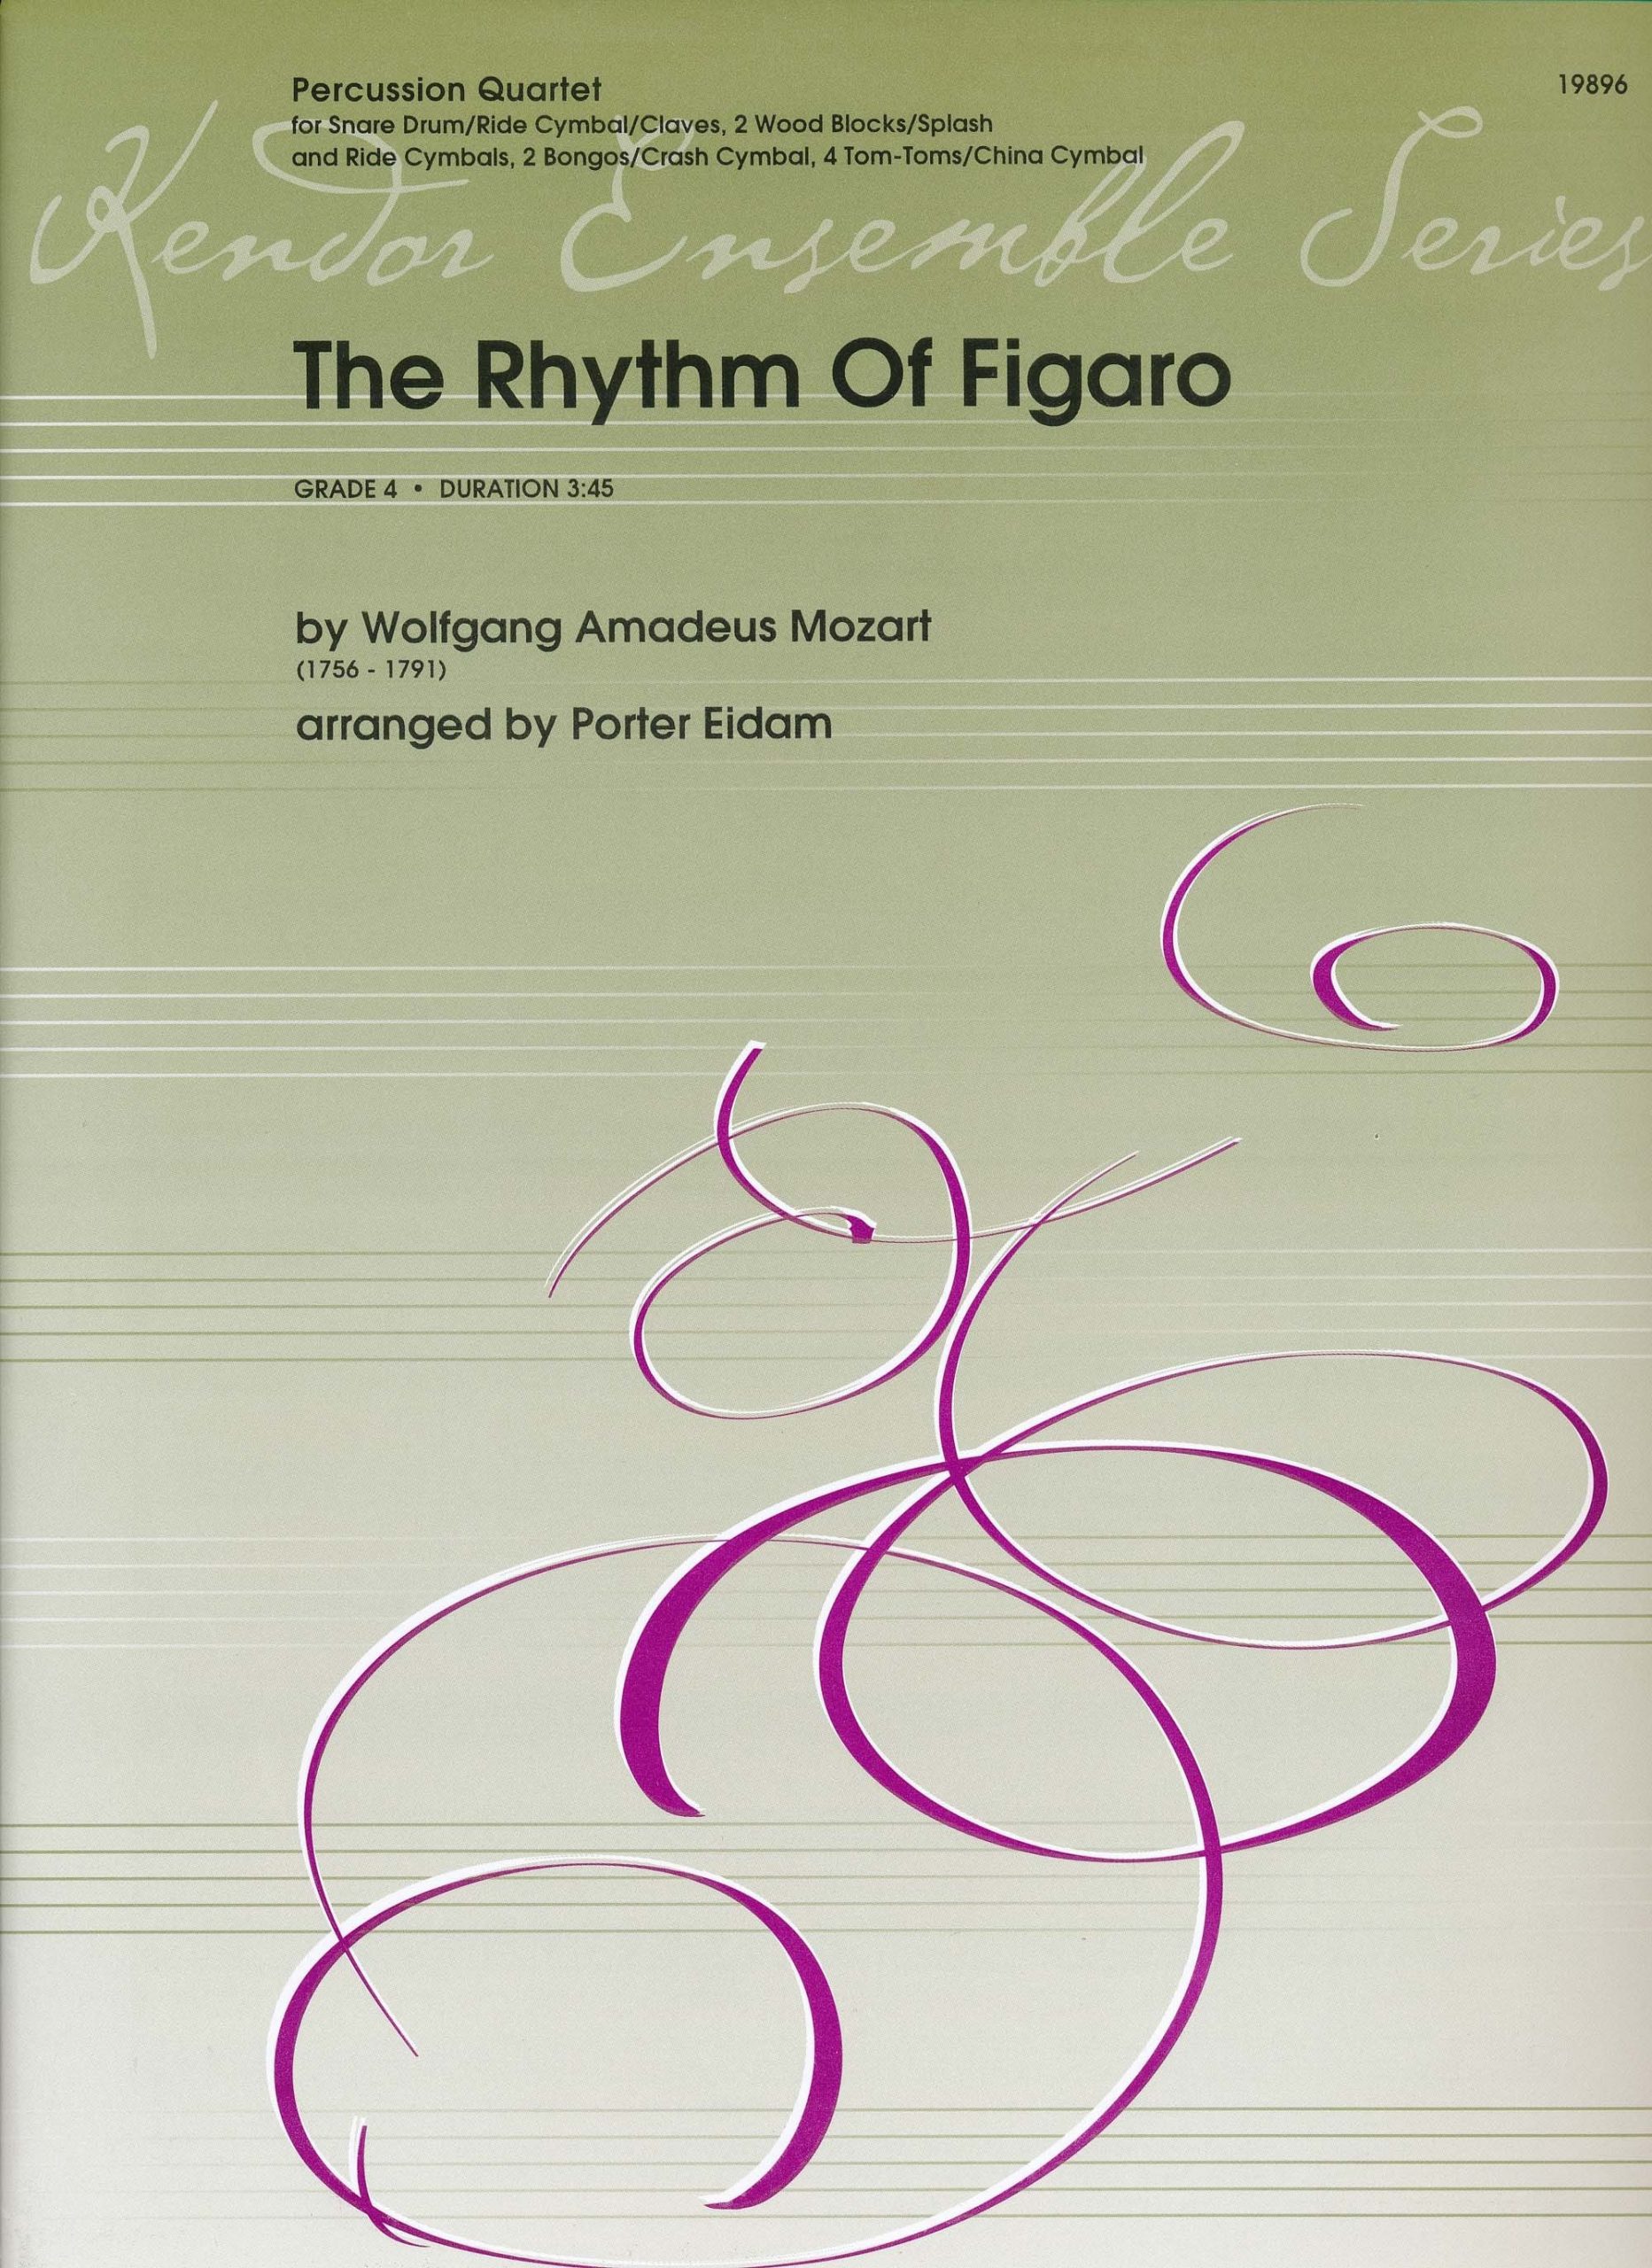 The Rhythm of Figaro